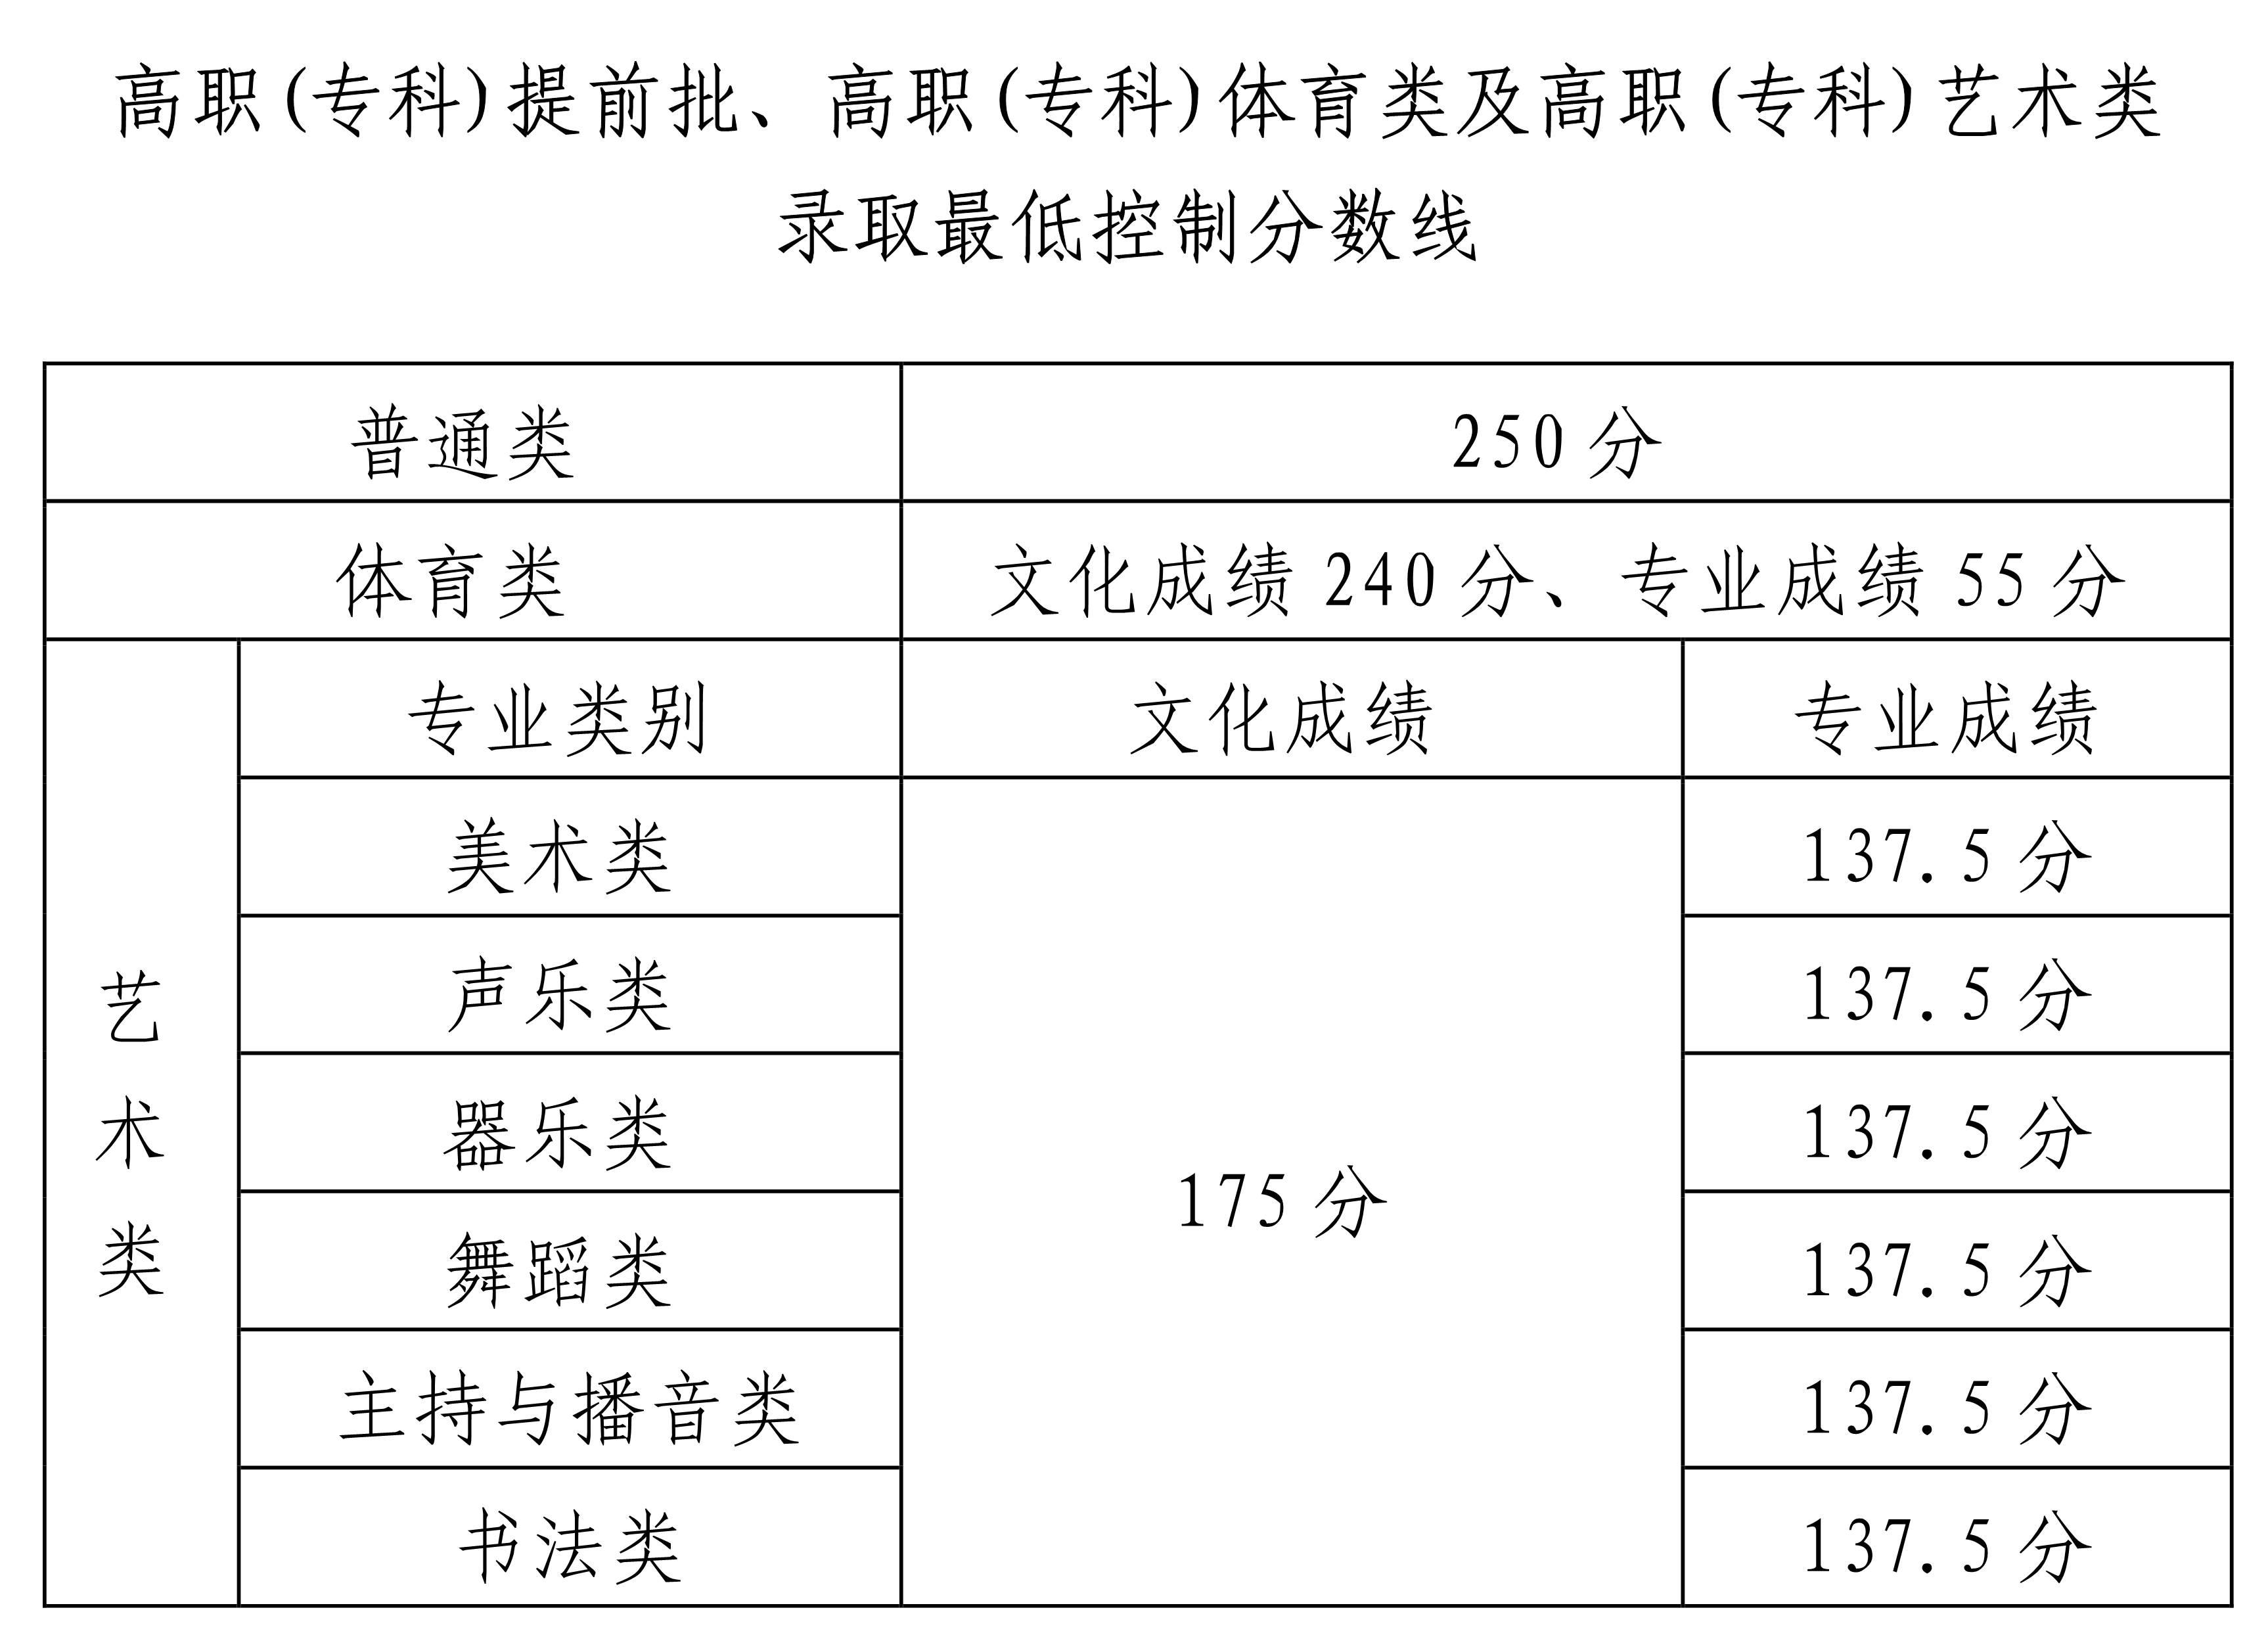 2022年海南省普通高校招生专科批录取最低控制分数的公告